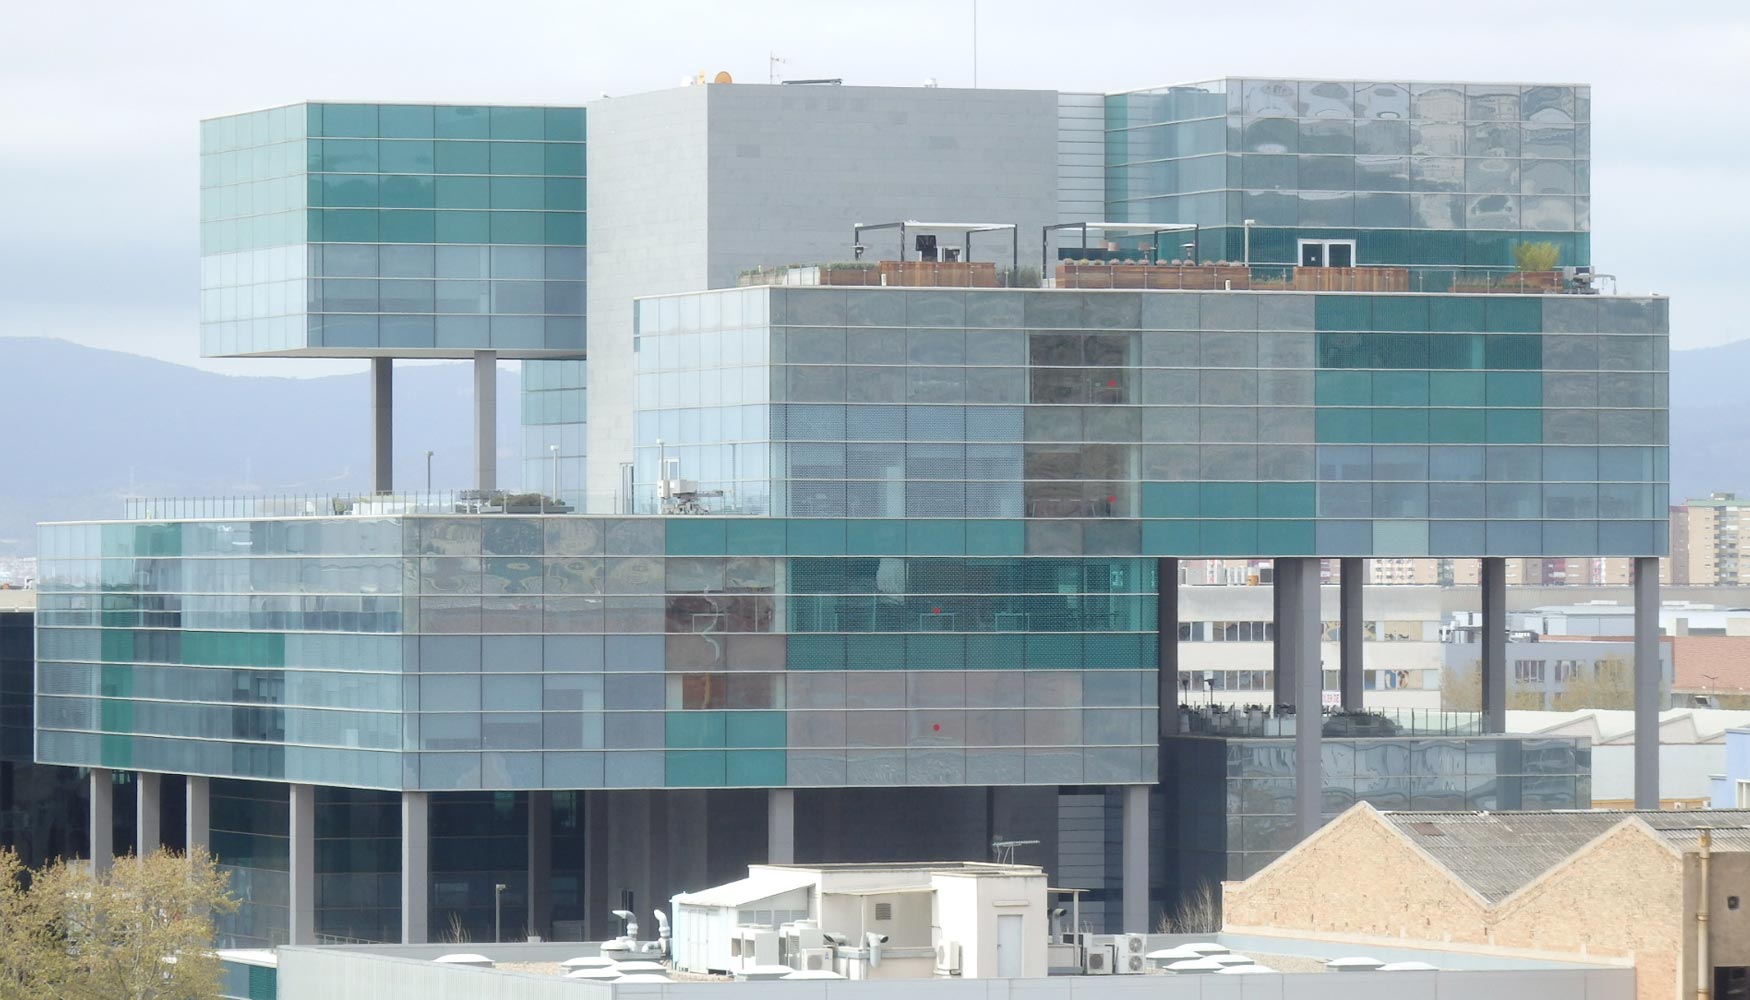 Imagen del edificio en la que se aprecian las diferentes configuraciones de color del vidrio